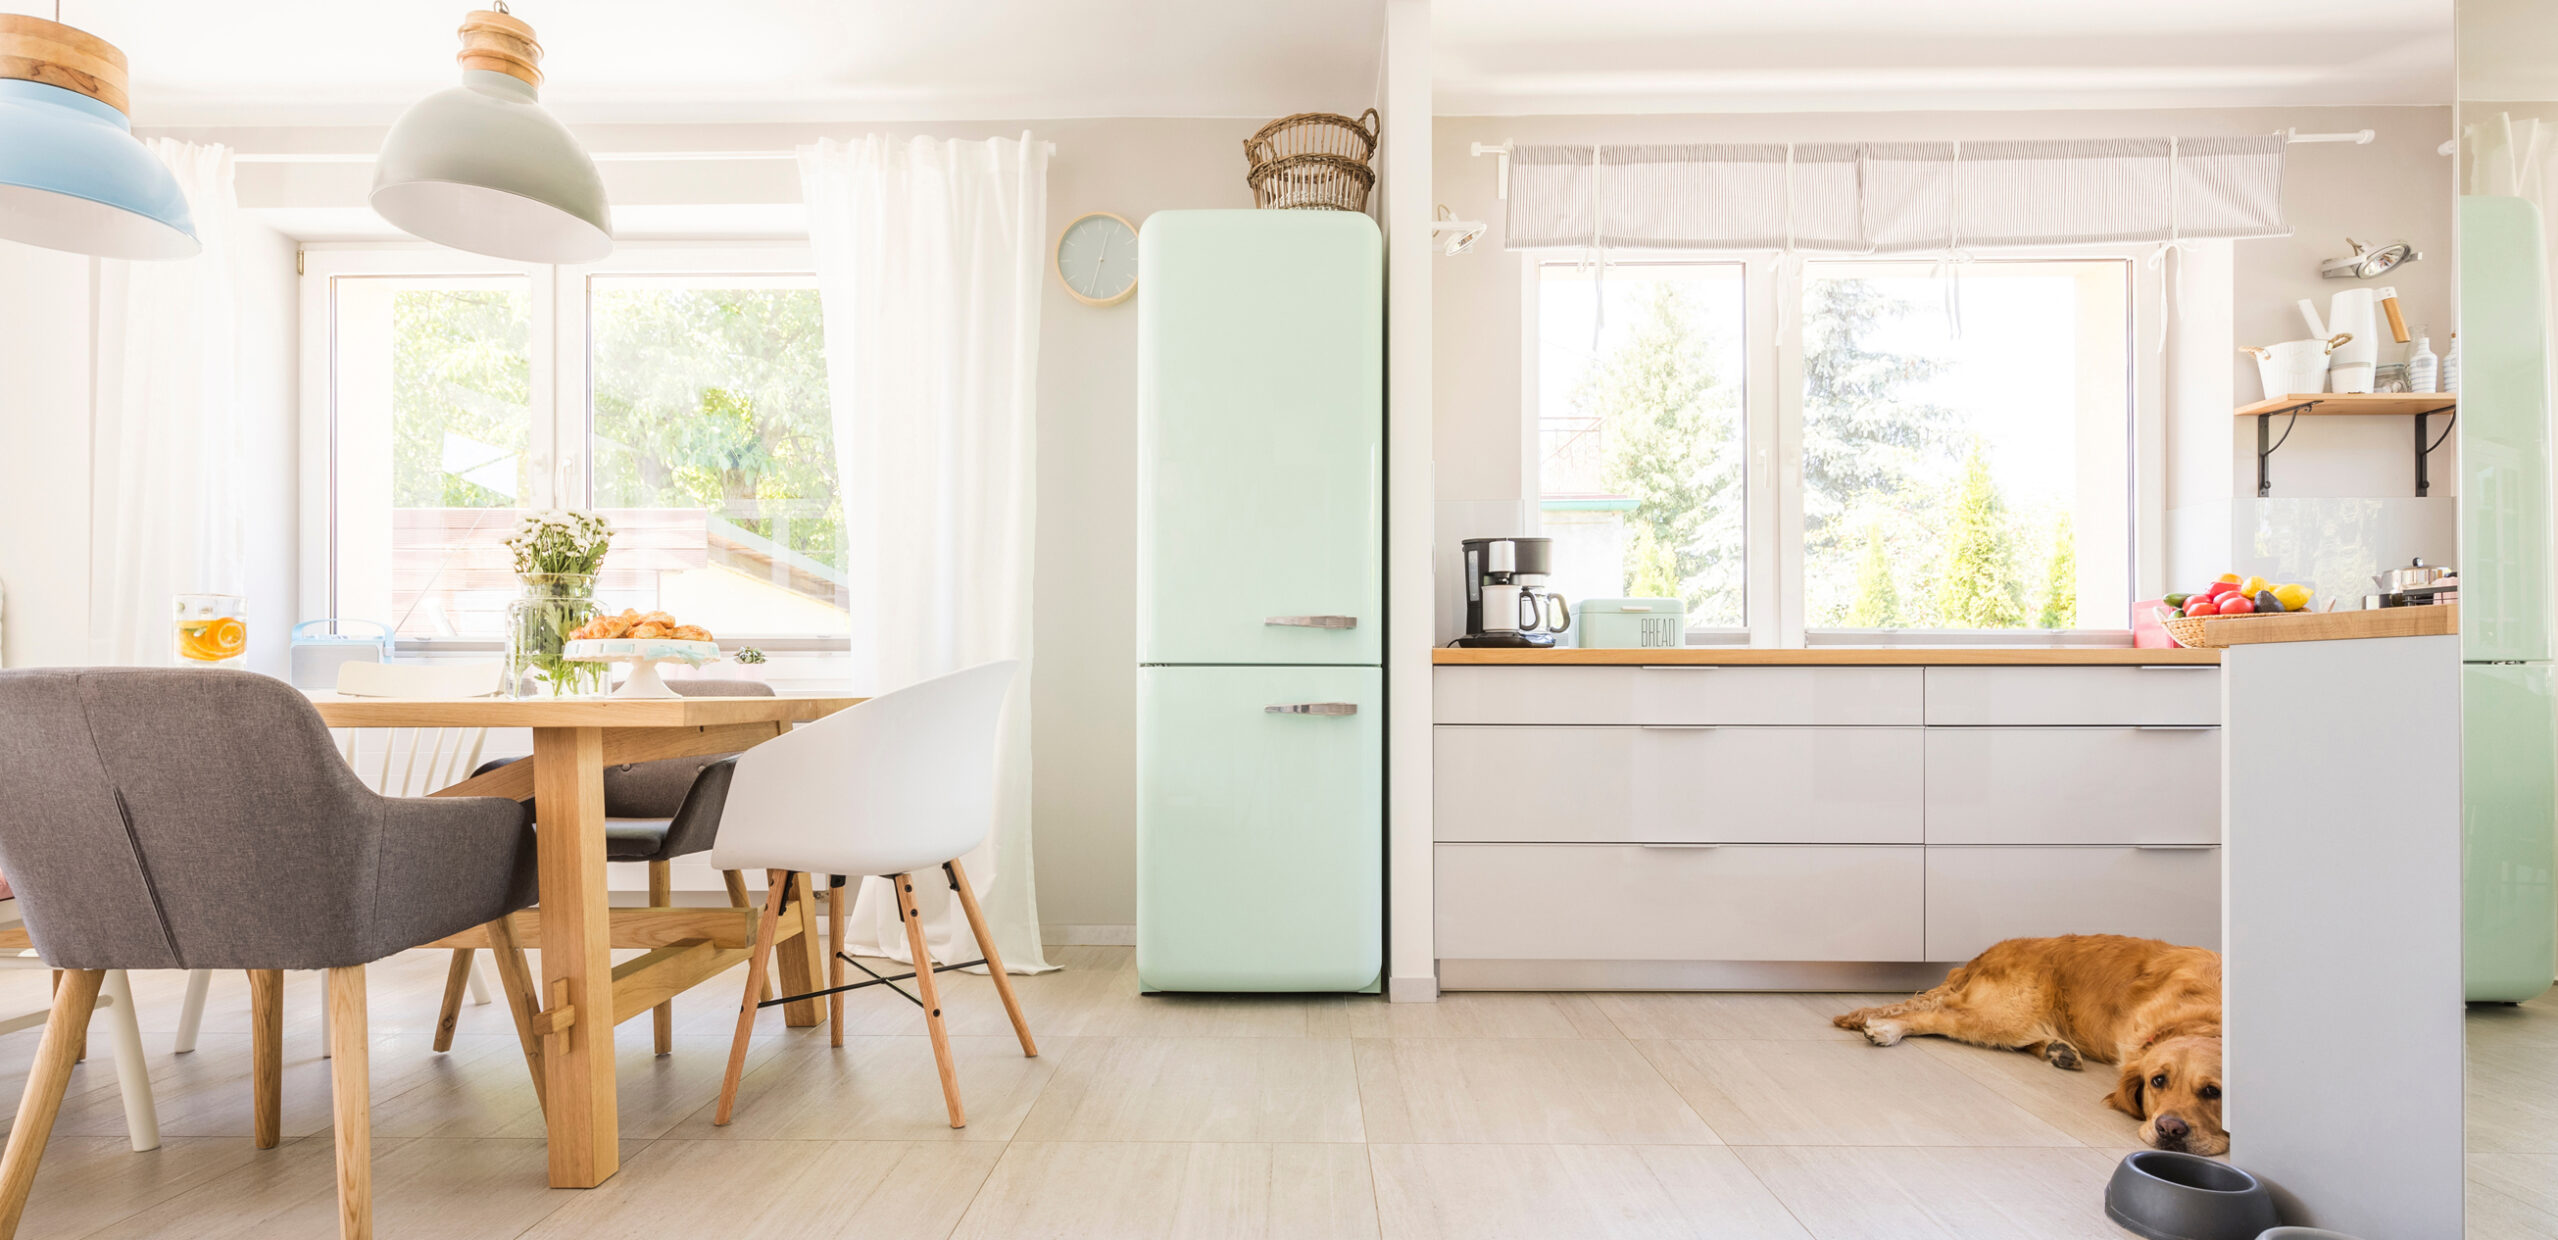 Mintgrüner Retro-Kühlschrank in offener Wohnküche